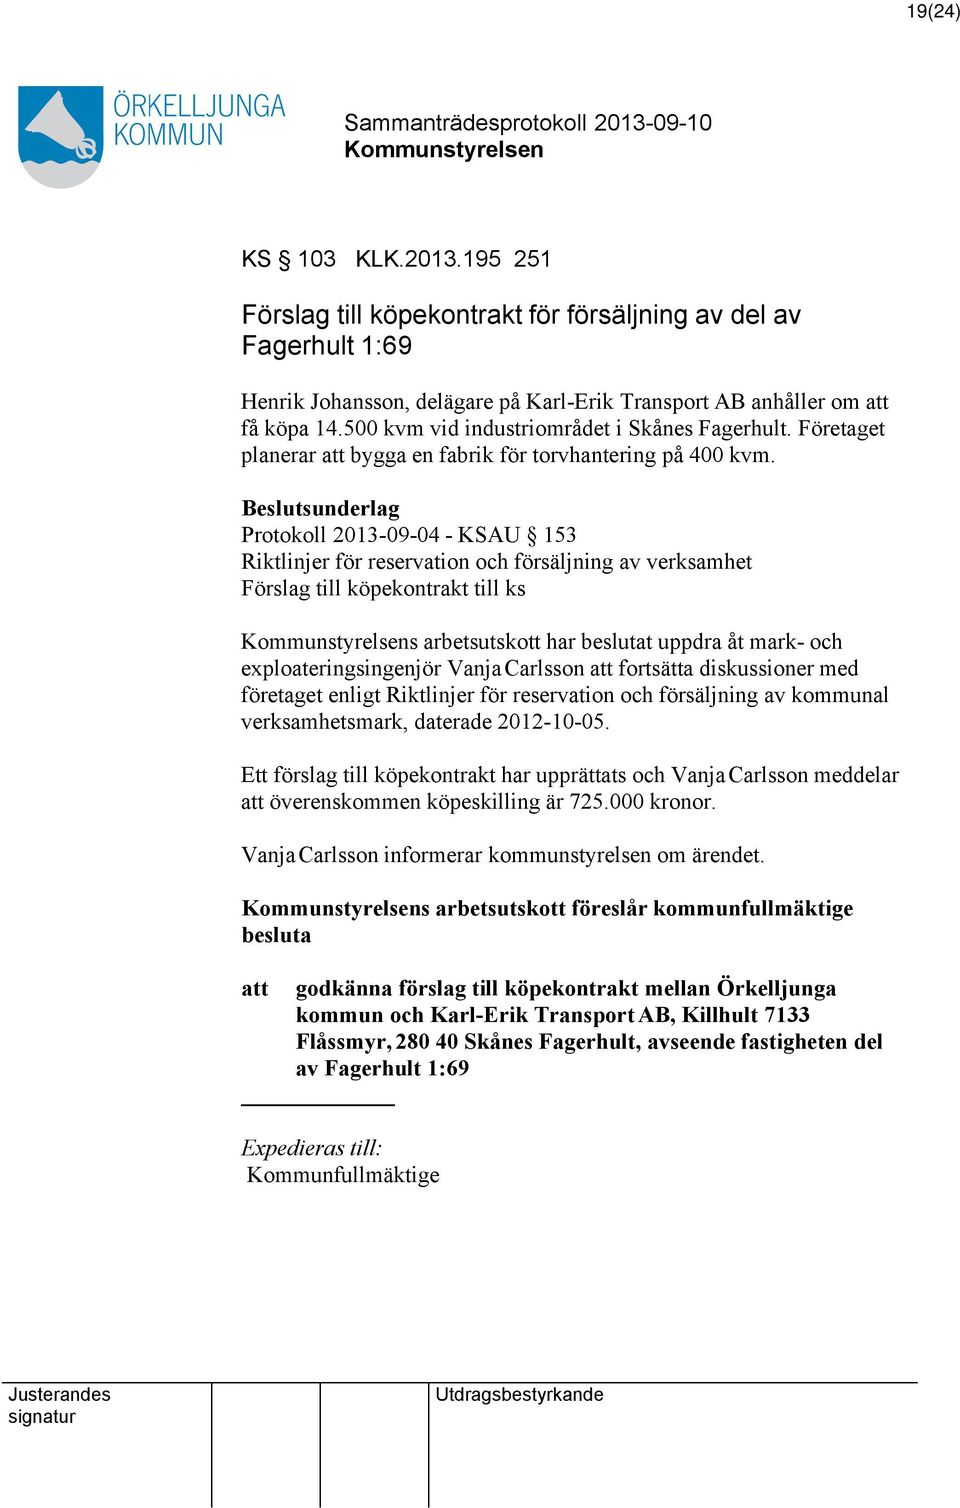 Protokoll 2013-09-04 - KSAU 153 Riktlinjer för reservation och försäljning av verksamhet Förslag till köpekontrakt till ks s arbetsutskott har beslutat uppdra åt mark- och exploateringsingenjör